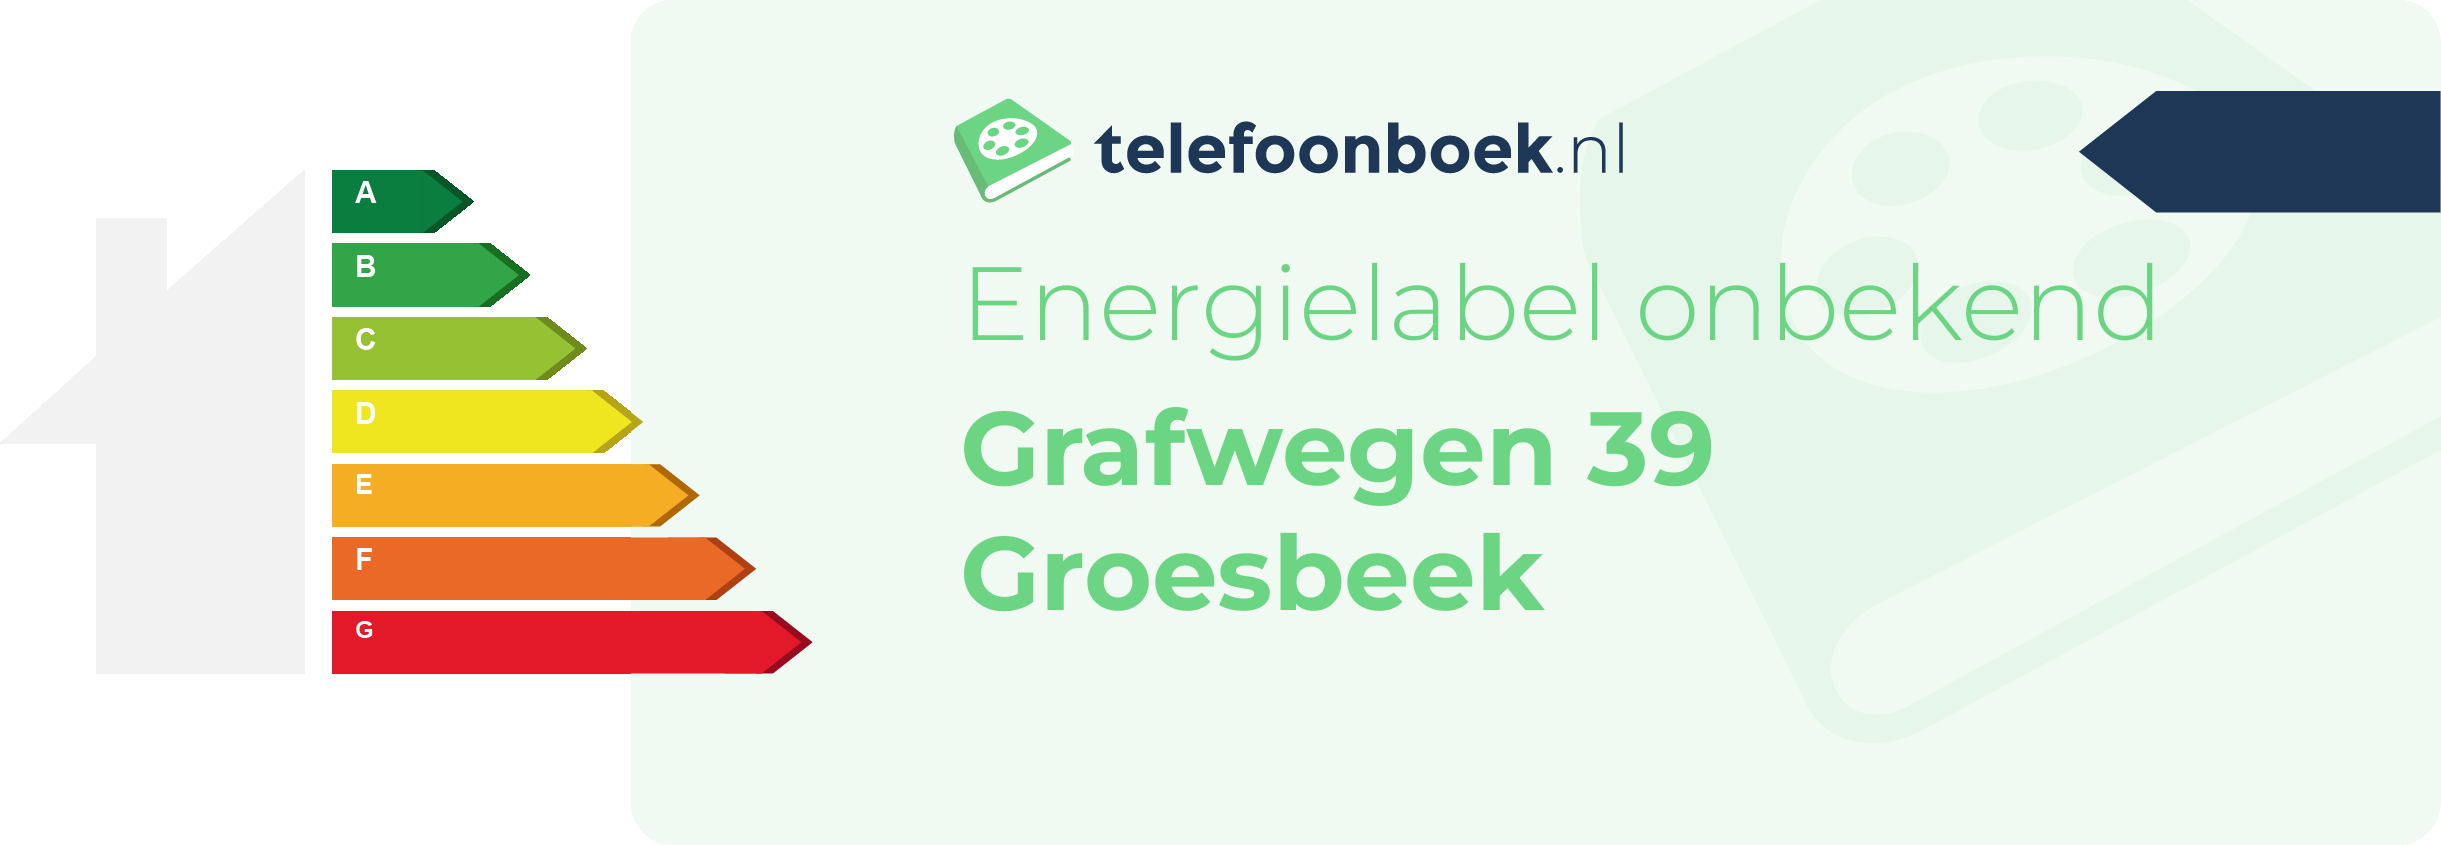 Energielabel Grafwegen 39 Groesbeek